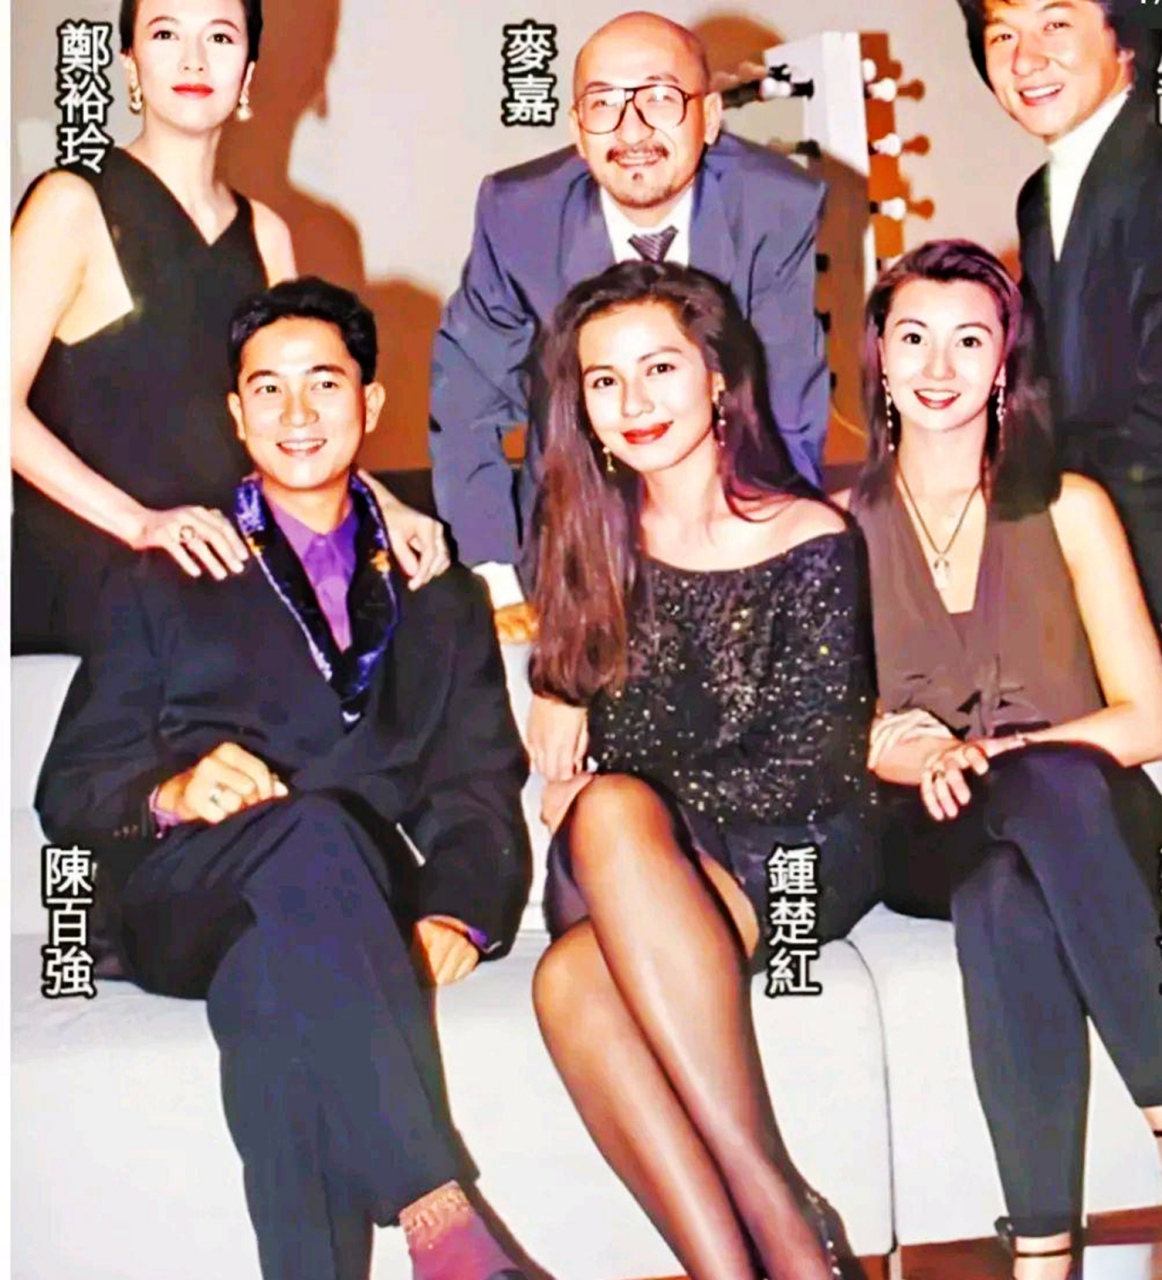 一张80年代香港明星老照片中,钟楚红坐在c位,显得格外妩媚